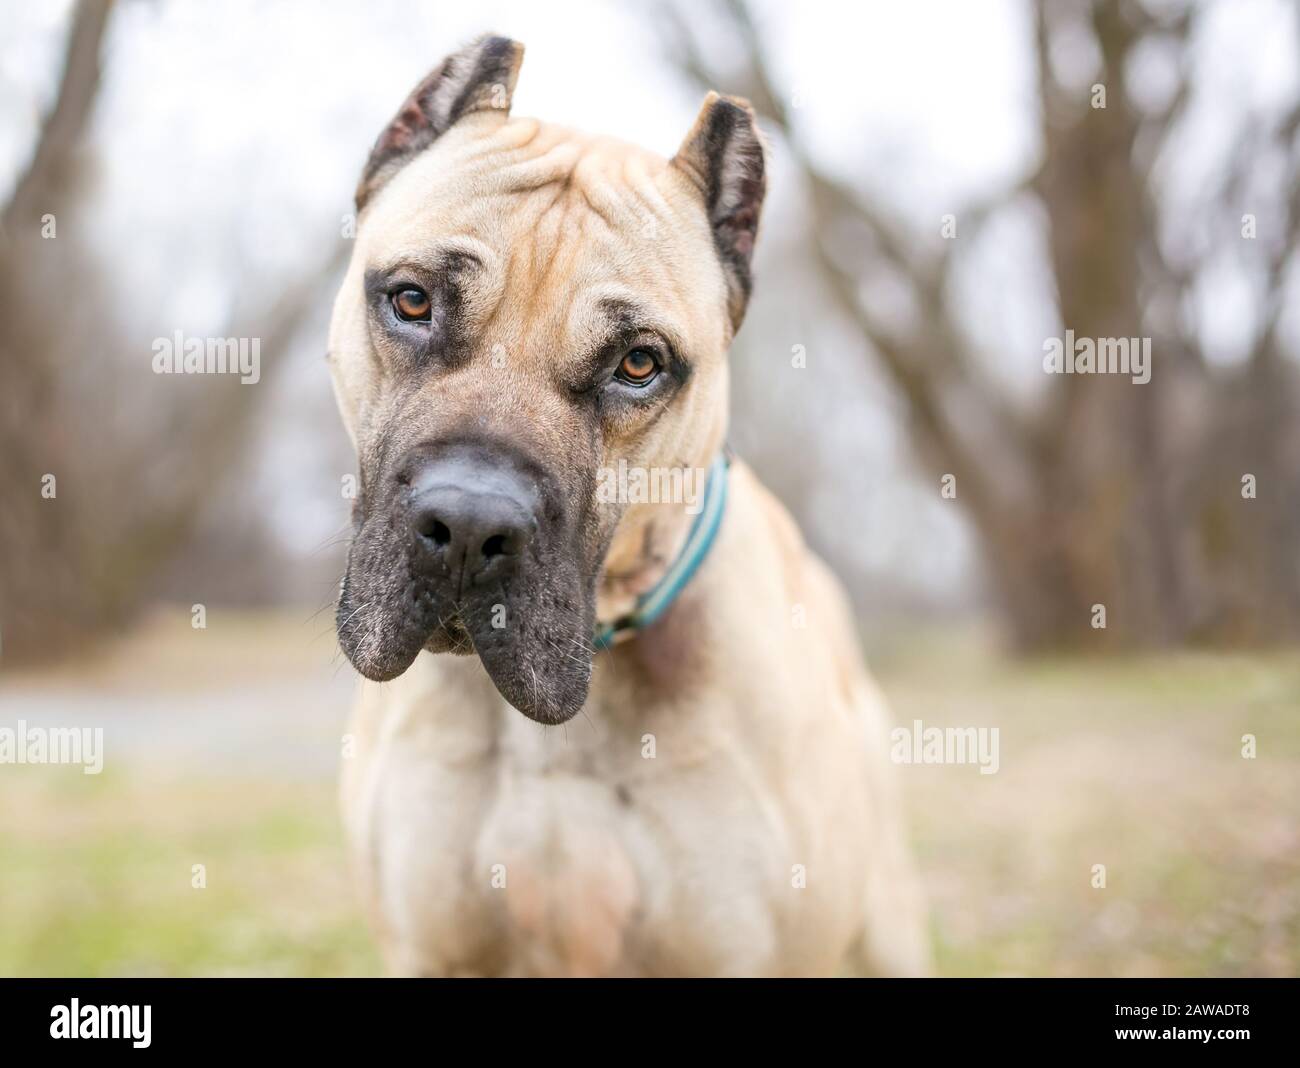 Un cane cane corso mastiff color marrone con orecchie tagliate, che ascolta con una testa inclinata Foto Stock